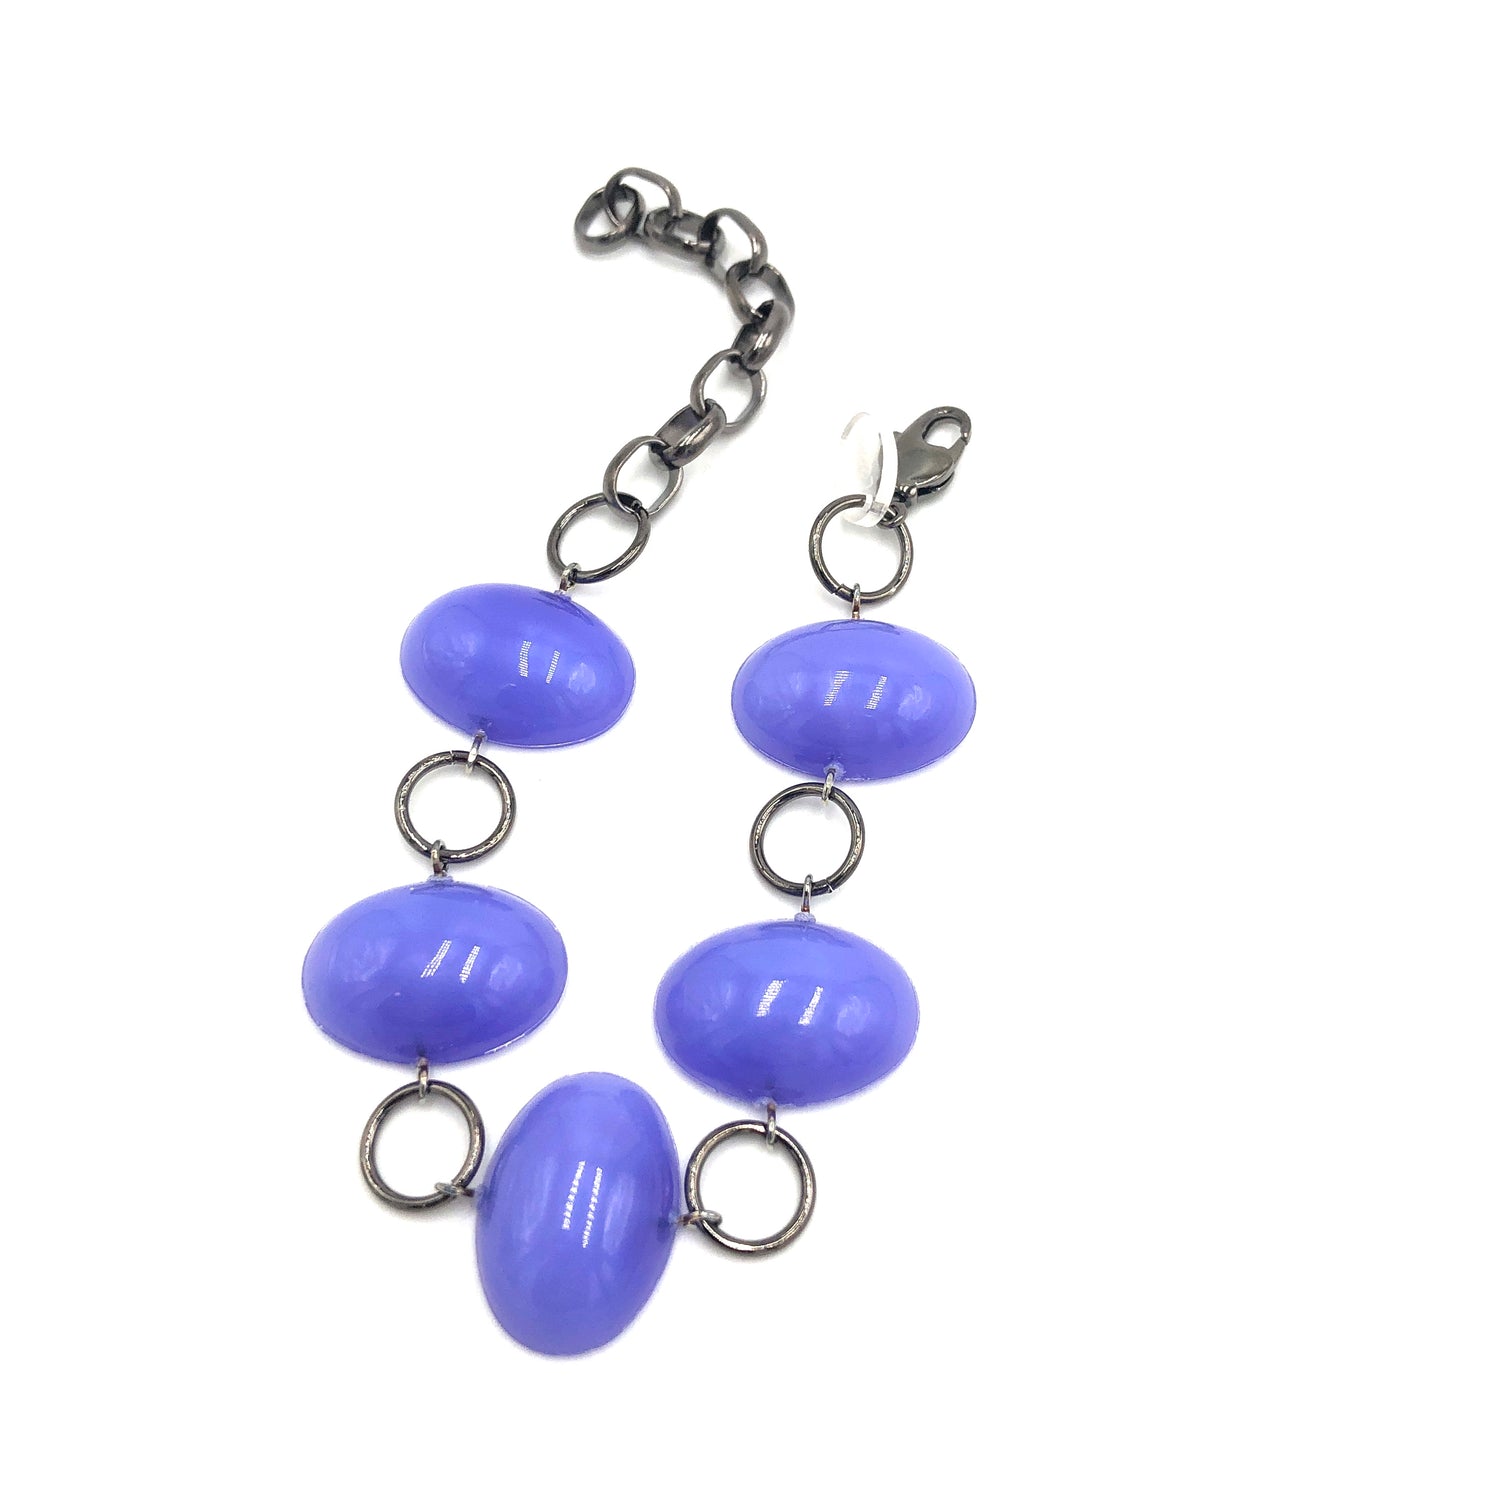 Lavender Jelly Bean Stations Bracelet